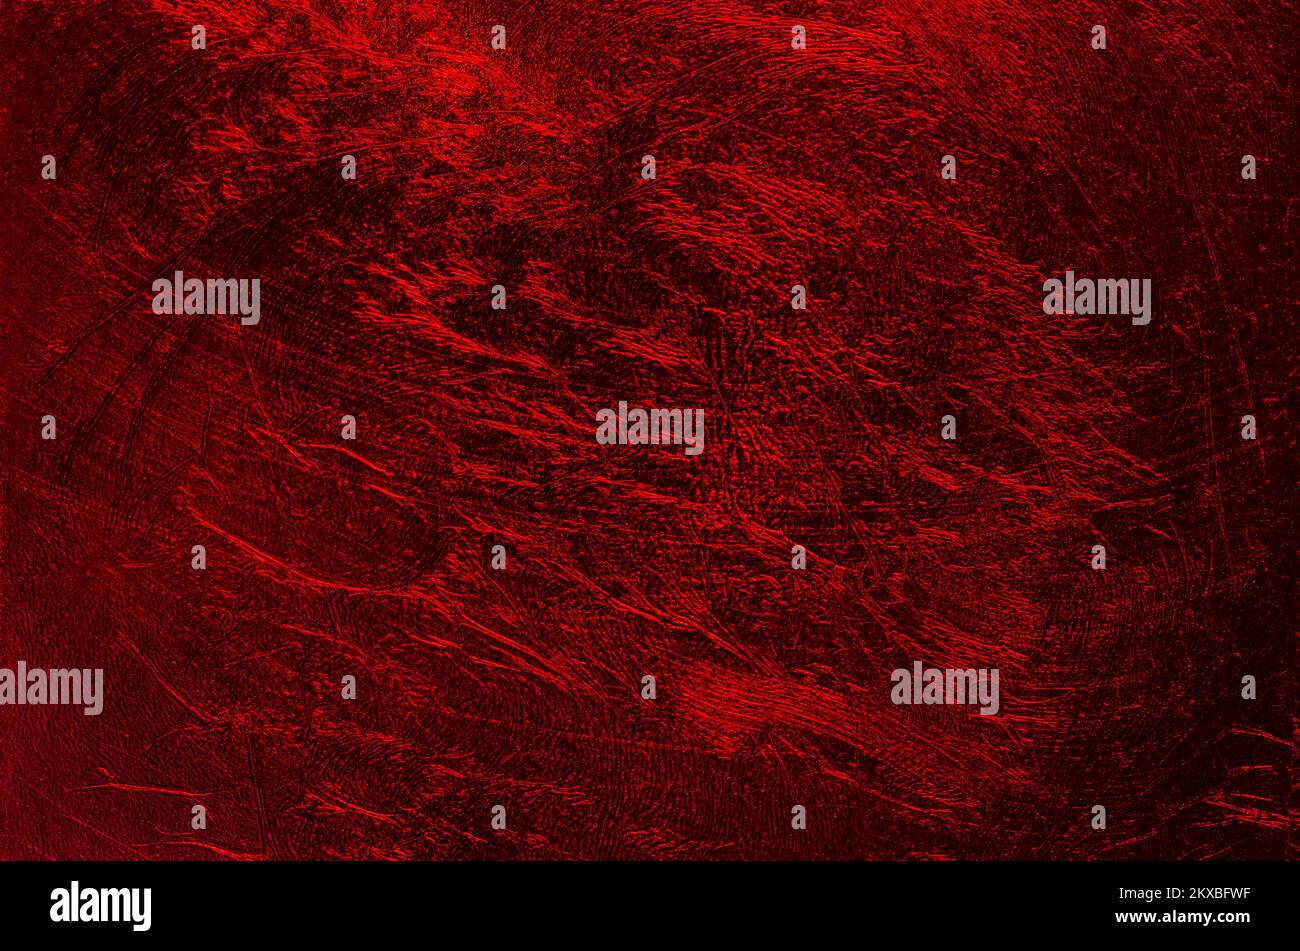 Film plastique métallique brillant, arrière-plan rouge foncé, avec surface structurée aléatoire. Banque D'Images